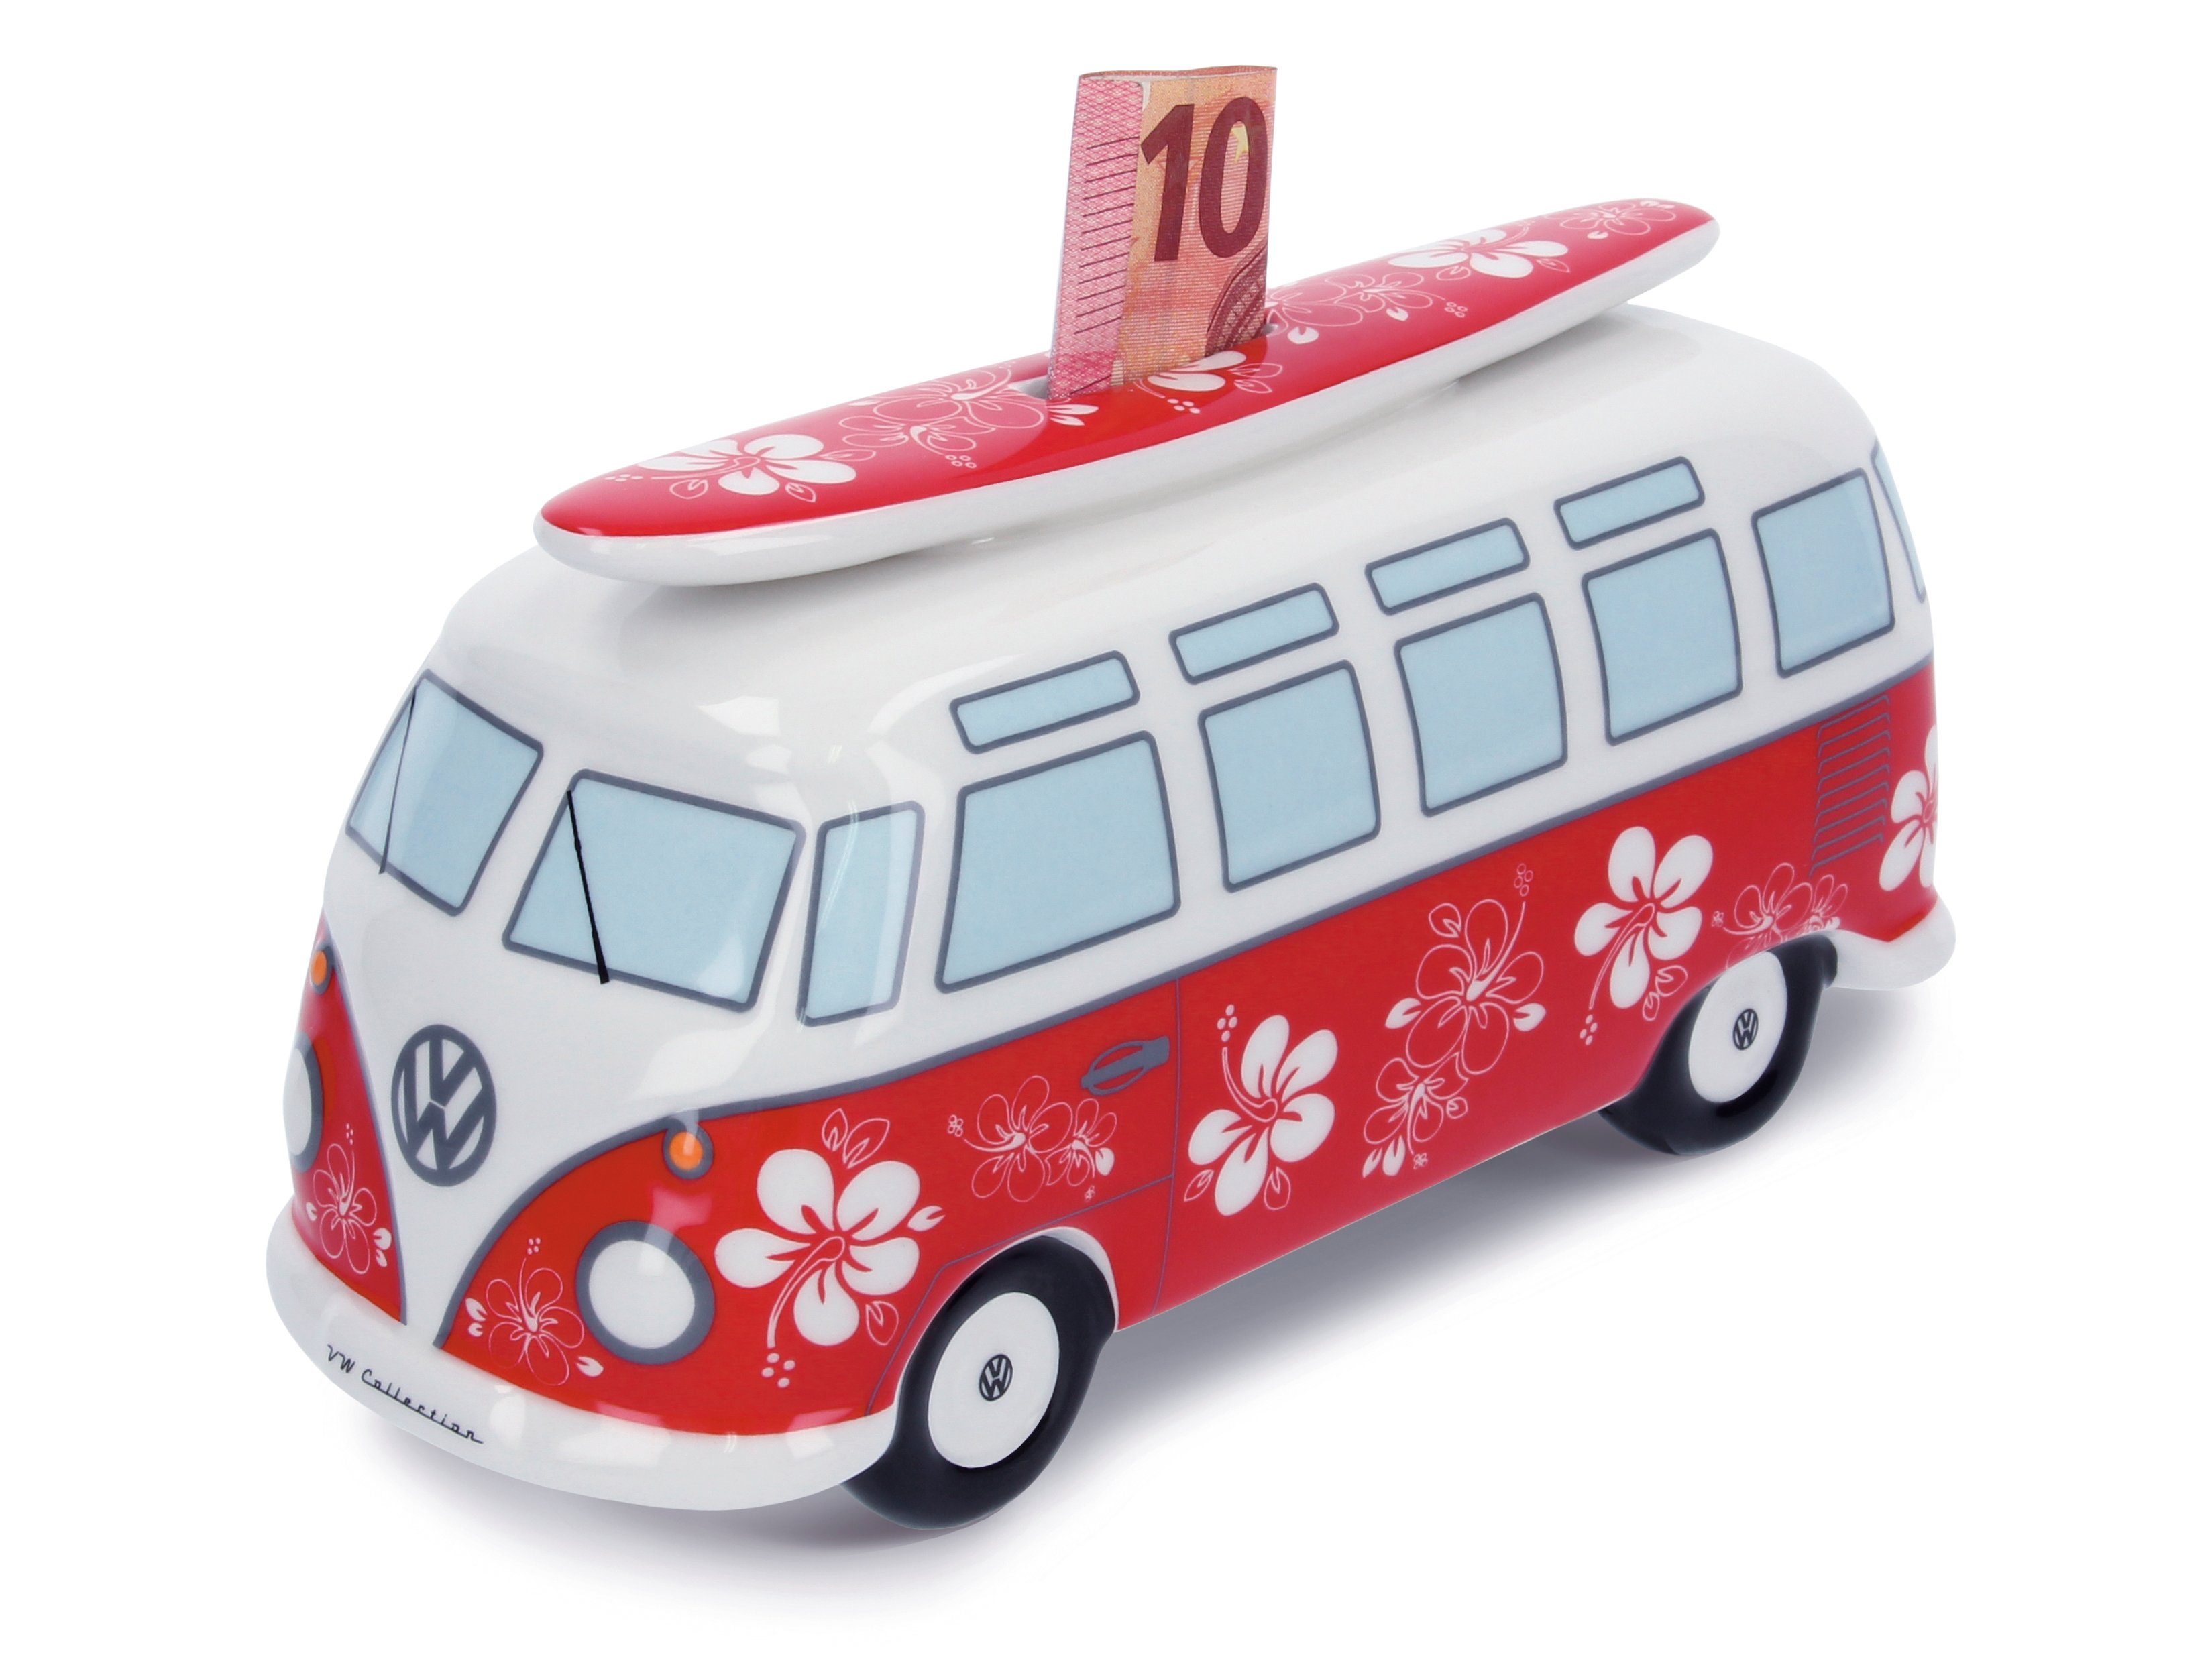 VW Collection by BRISA Spardose Volkswagen Sparschwein im T1 Bulli Bus Design mit Surfbrett, Geldbüchse aus hochwertiger Keramik